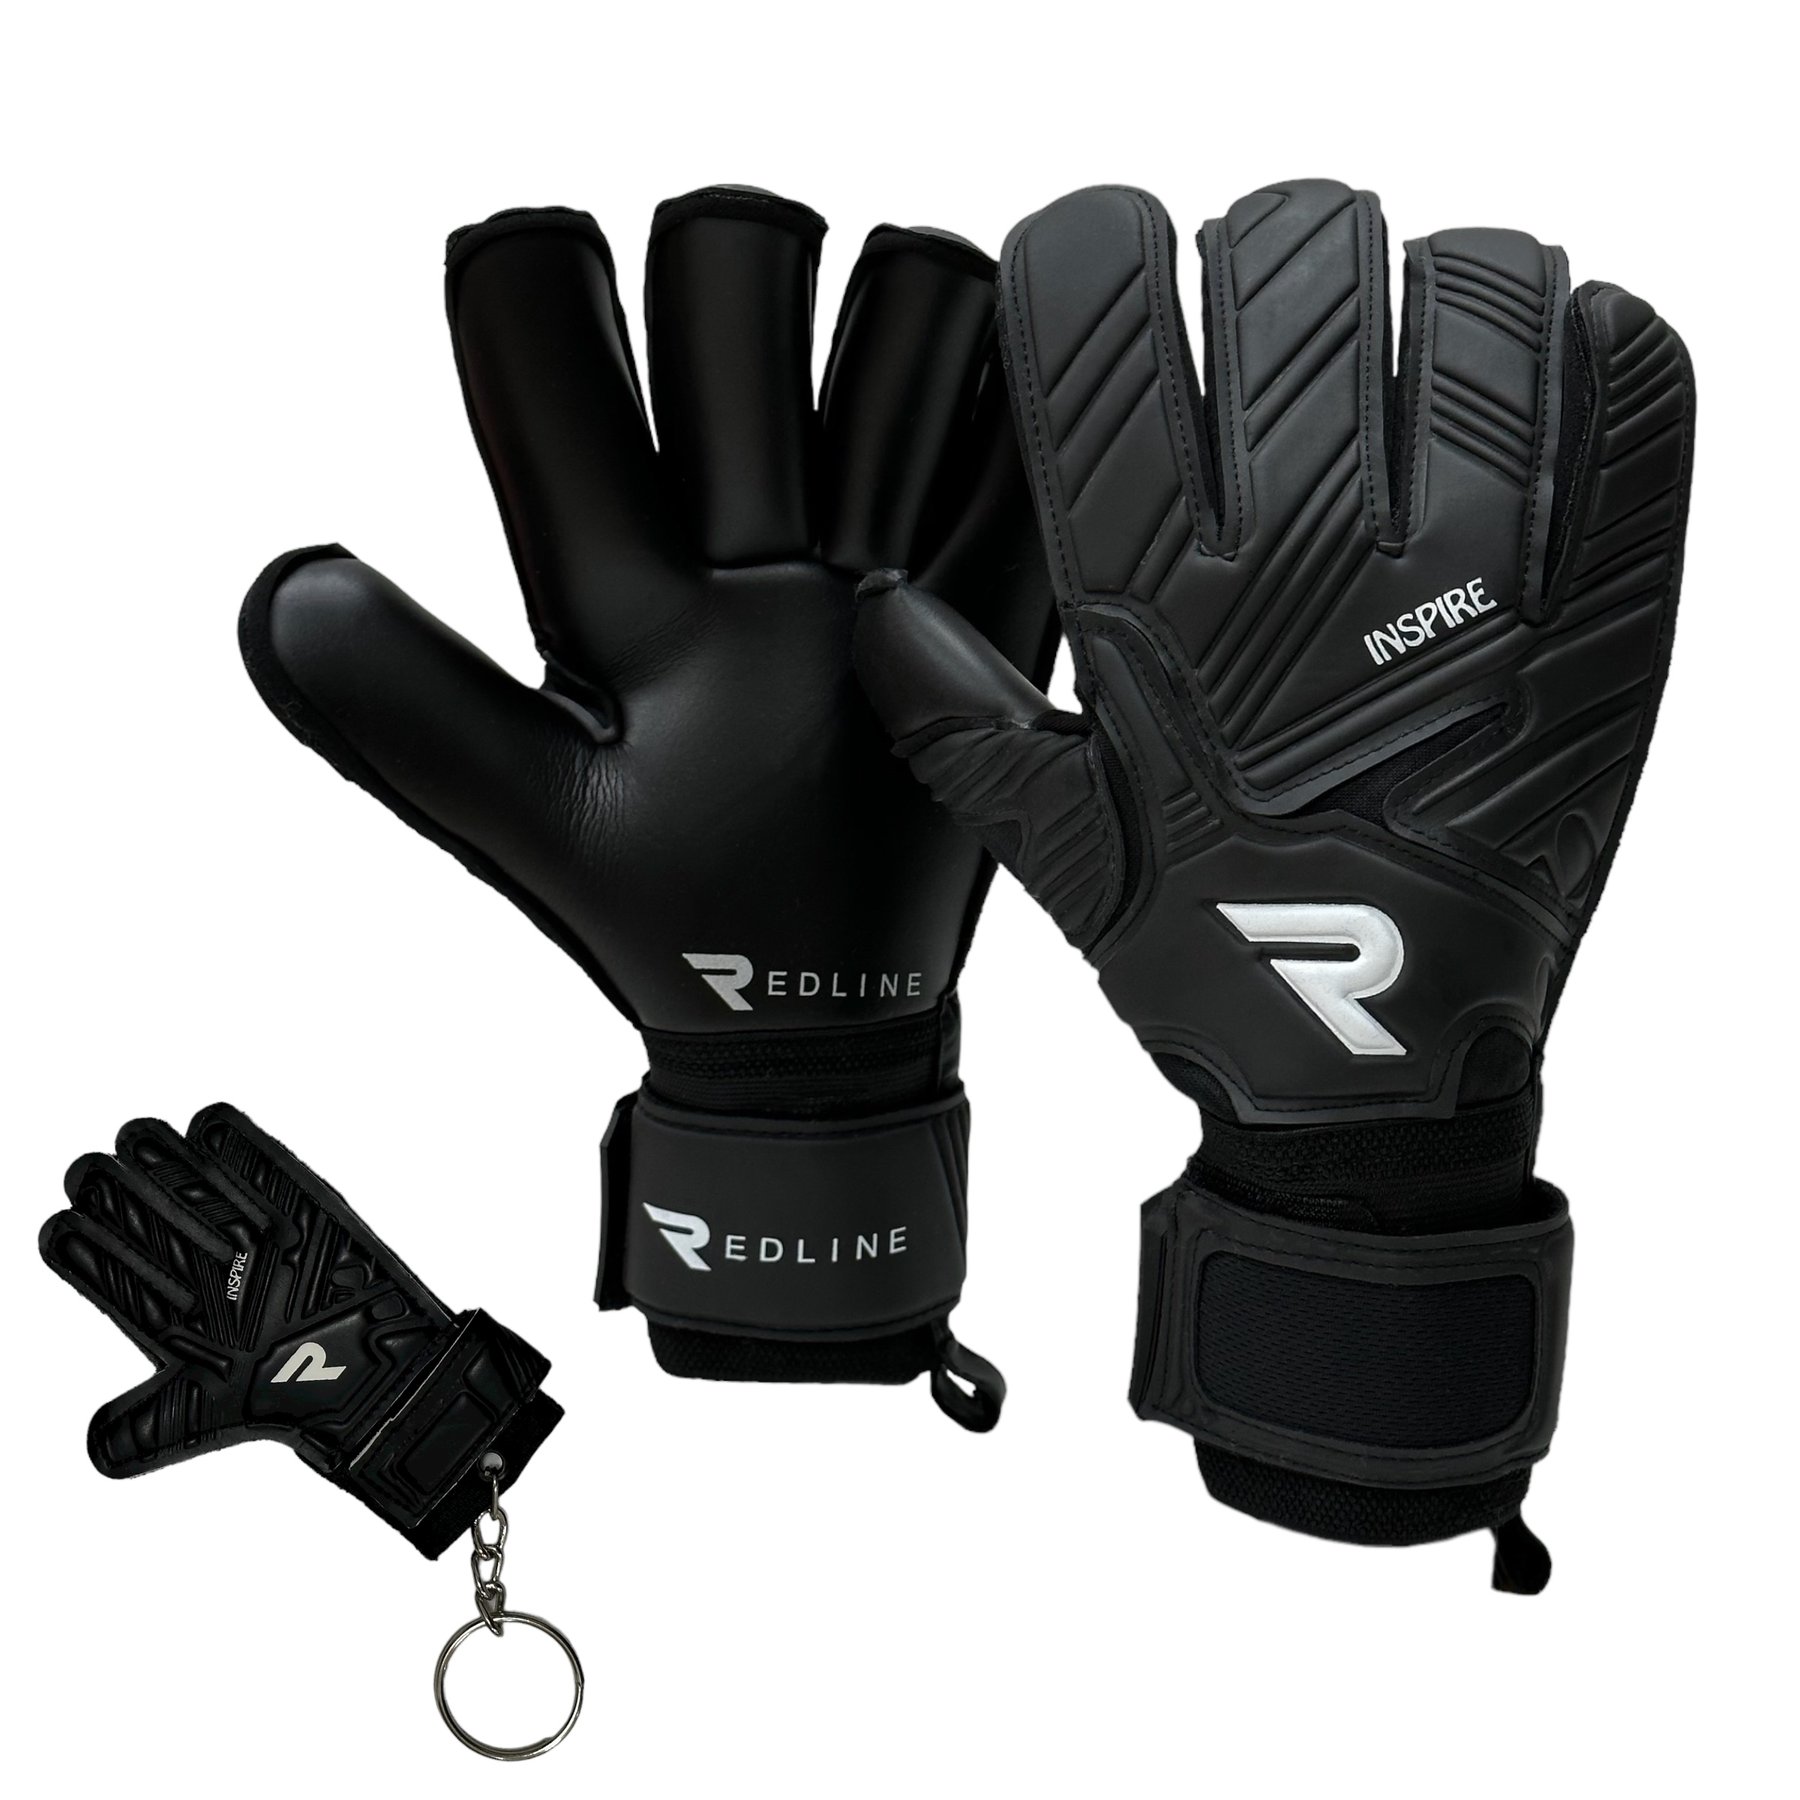 Вратарские перчатки Redline Inspire Black Pro купить